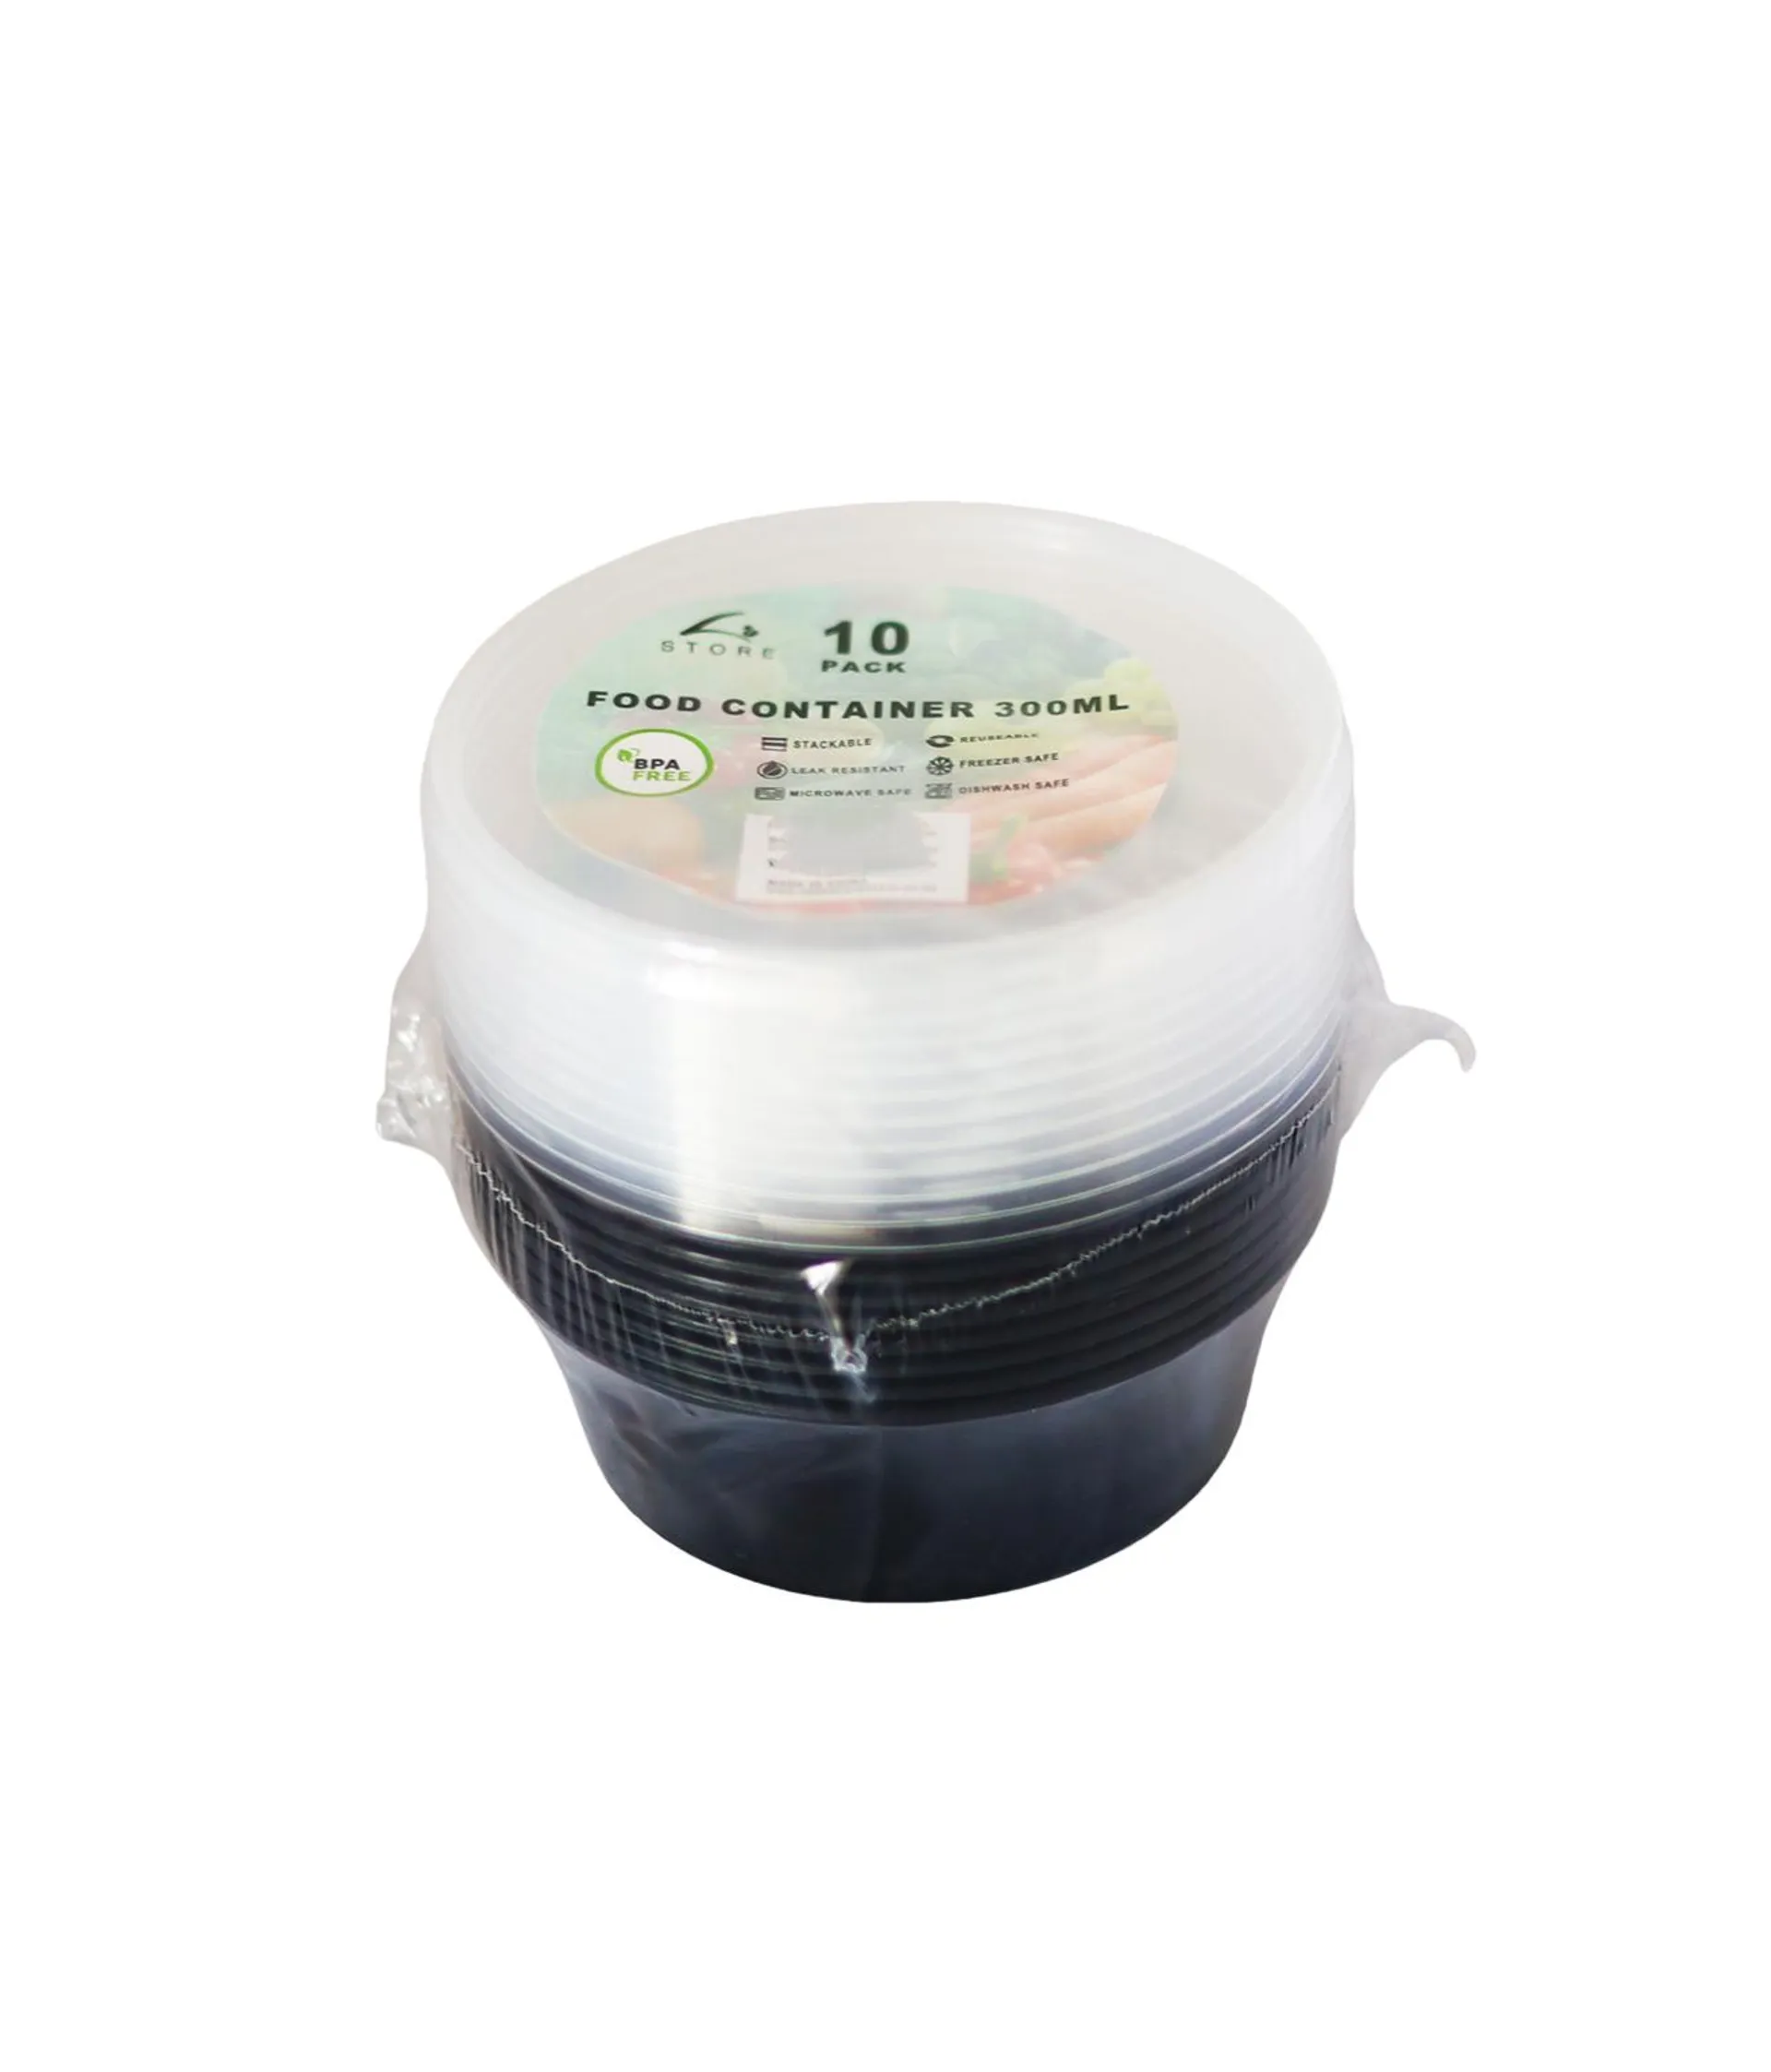 Black PP Plastic Round Food Container 10pc 300ml